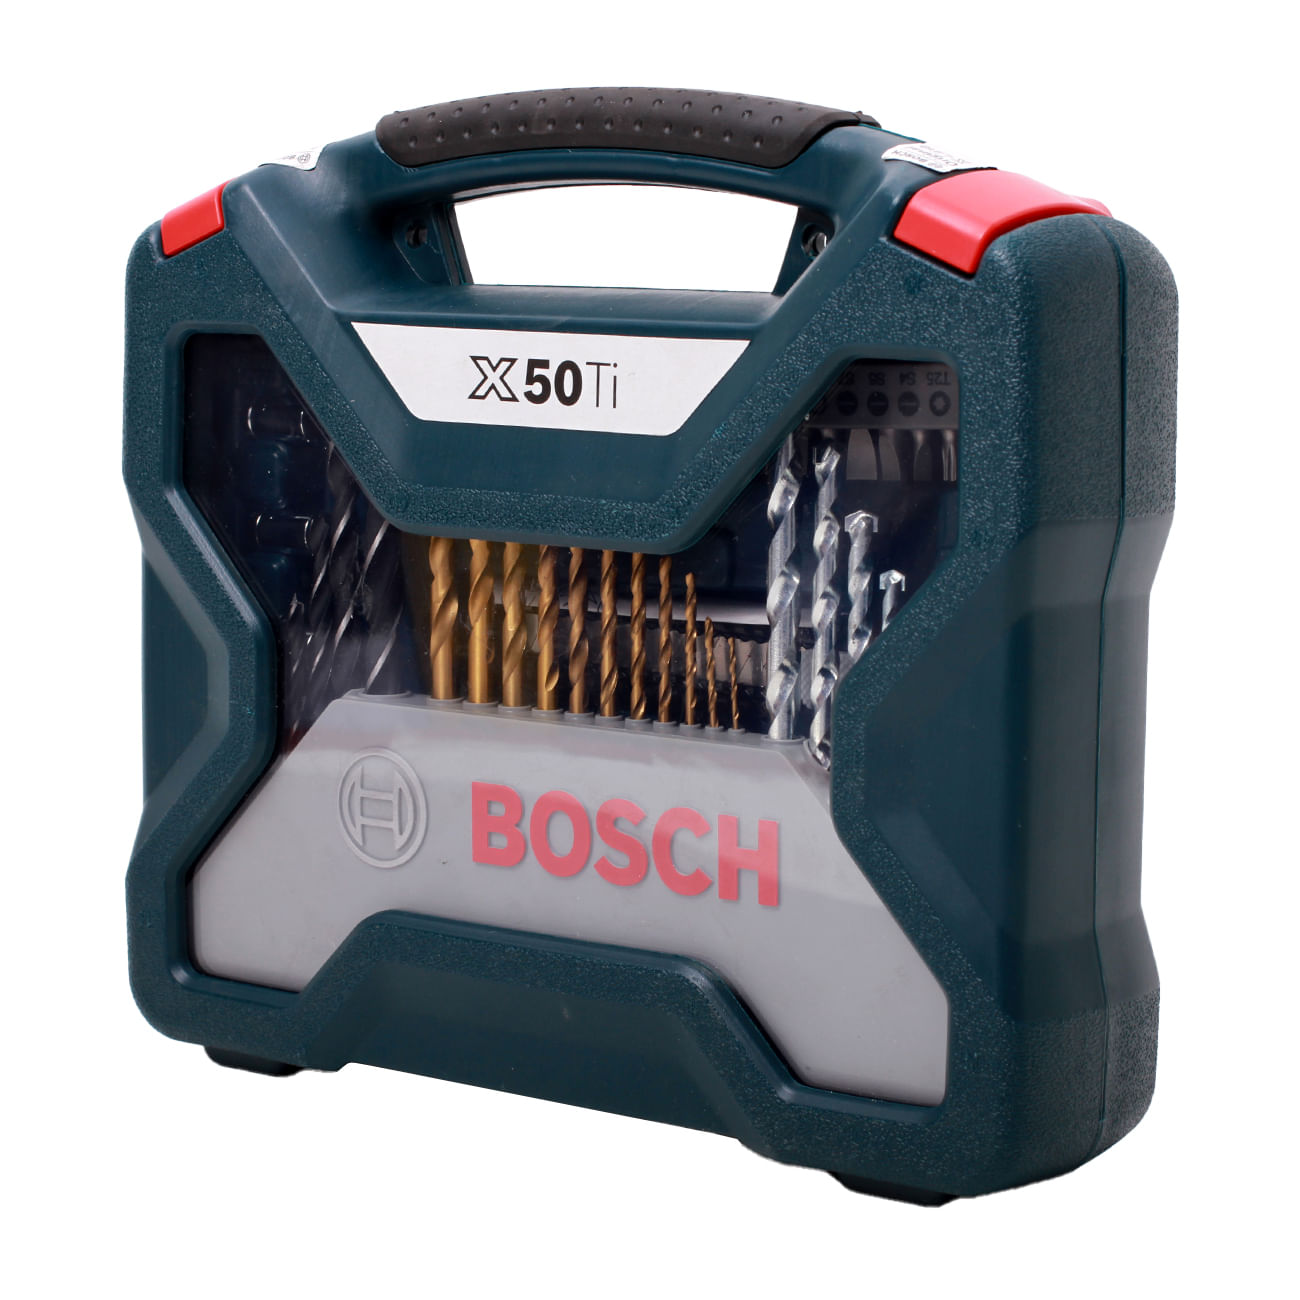 Set Puntas y Brocas Bosch Mini X-Line 15 unidades